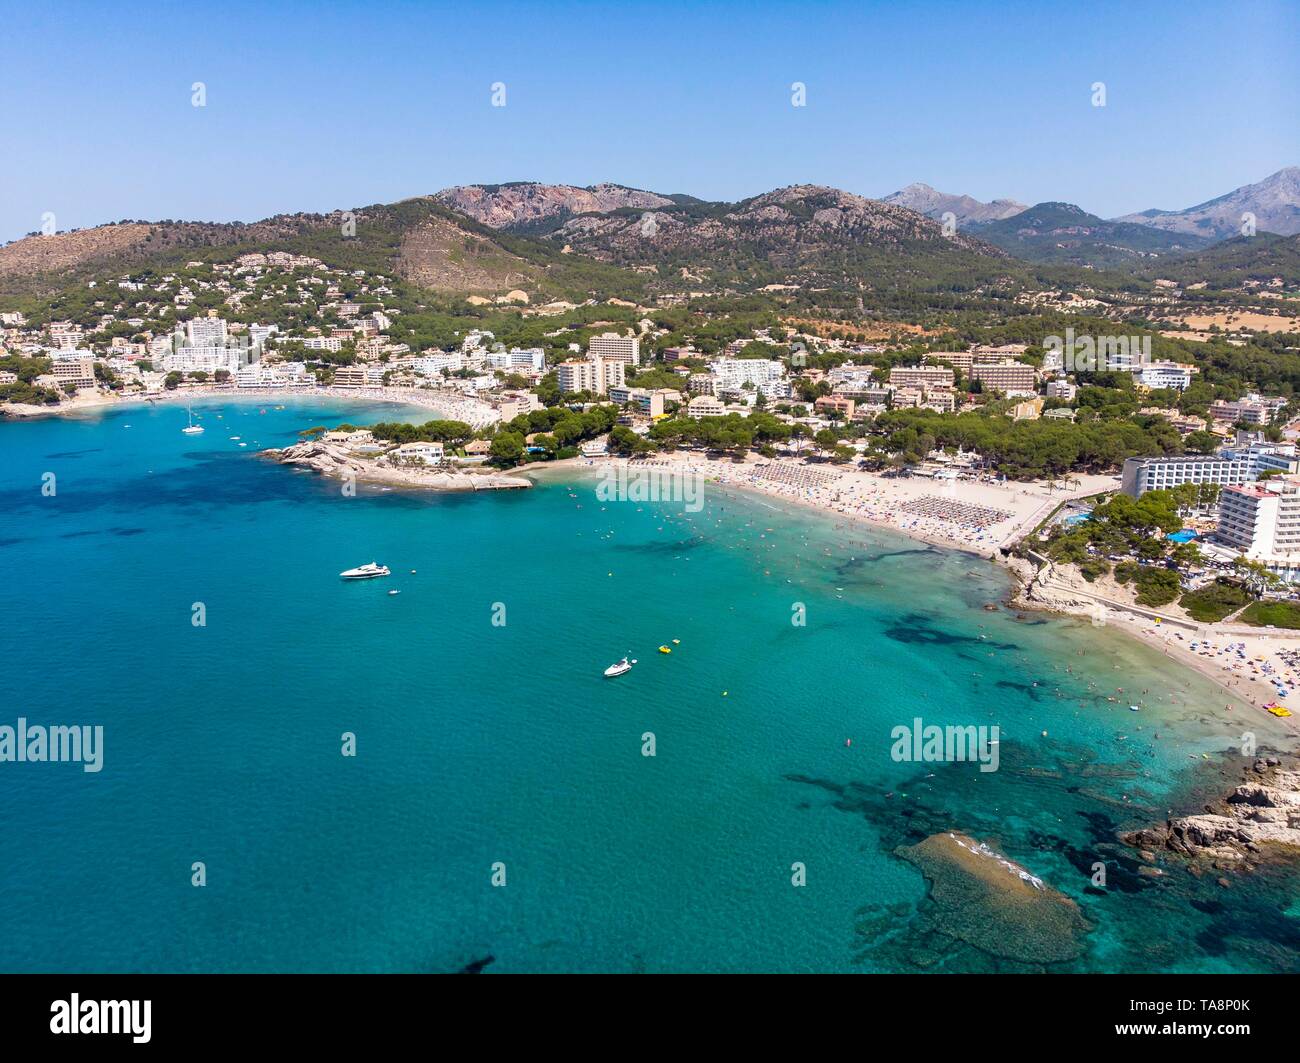 Vista aerea, con vista della città turistica Peguera con alberghi e spiagge, Costa de la Calma, regione Caliva, Maiorca, isole Baleari, Spagna Foto Stock